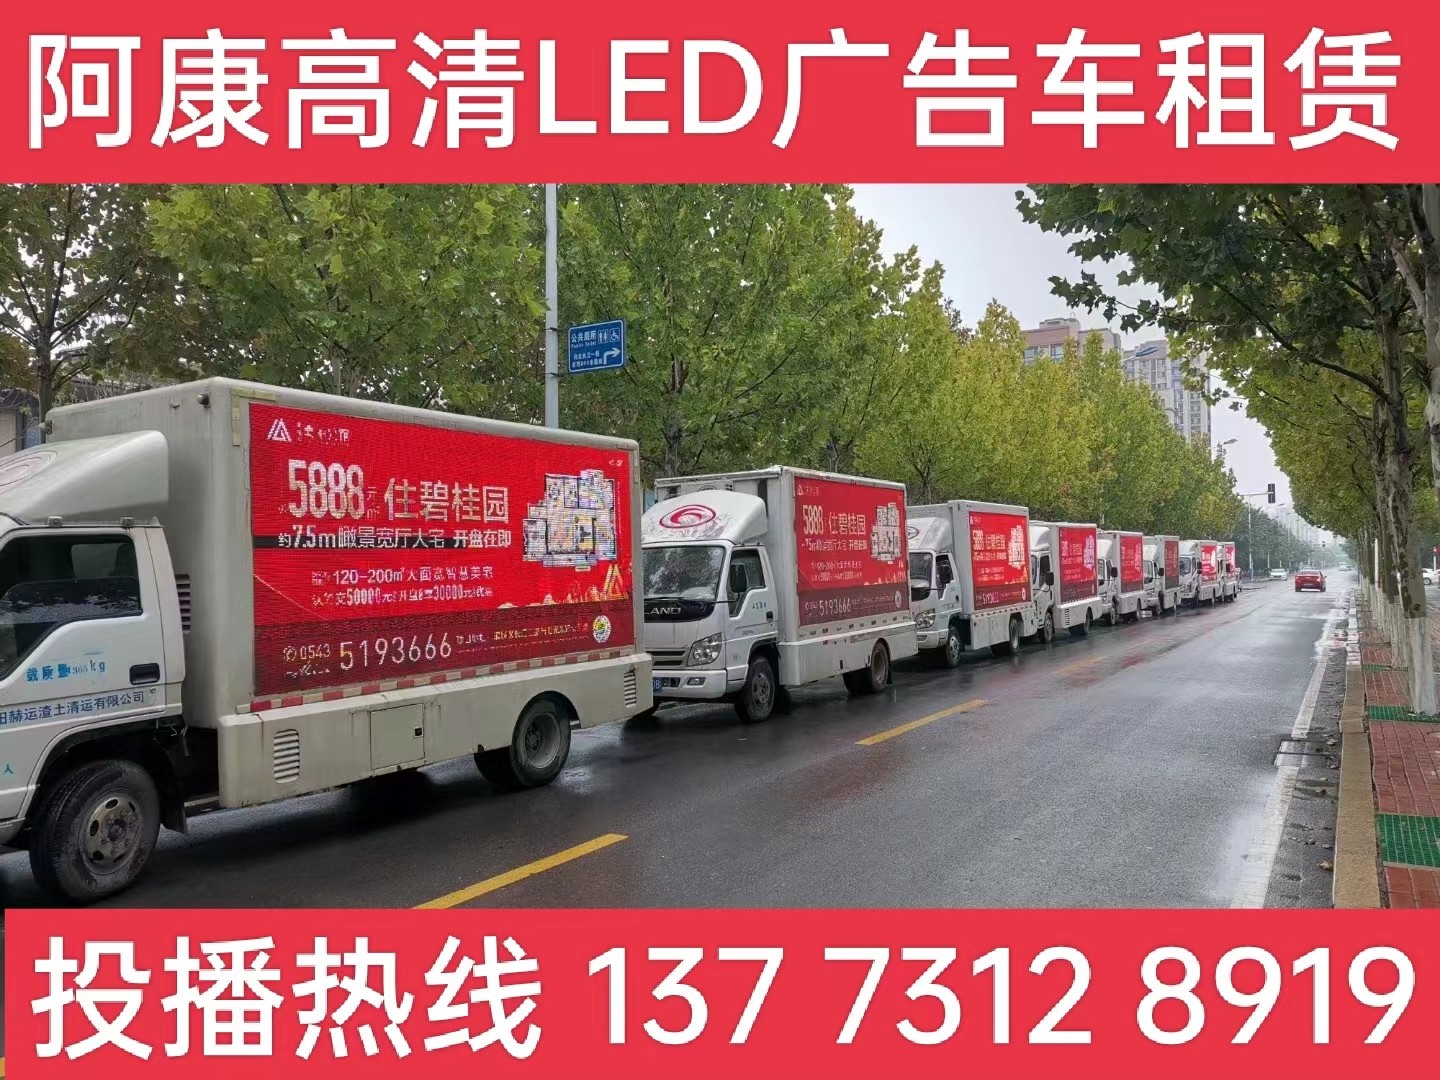 姜堰区宣传车租赁公司-楼盘LED广告车投放